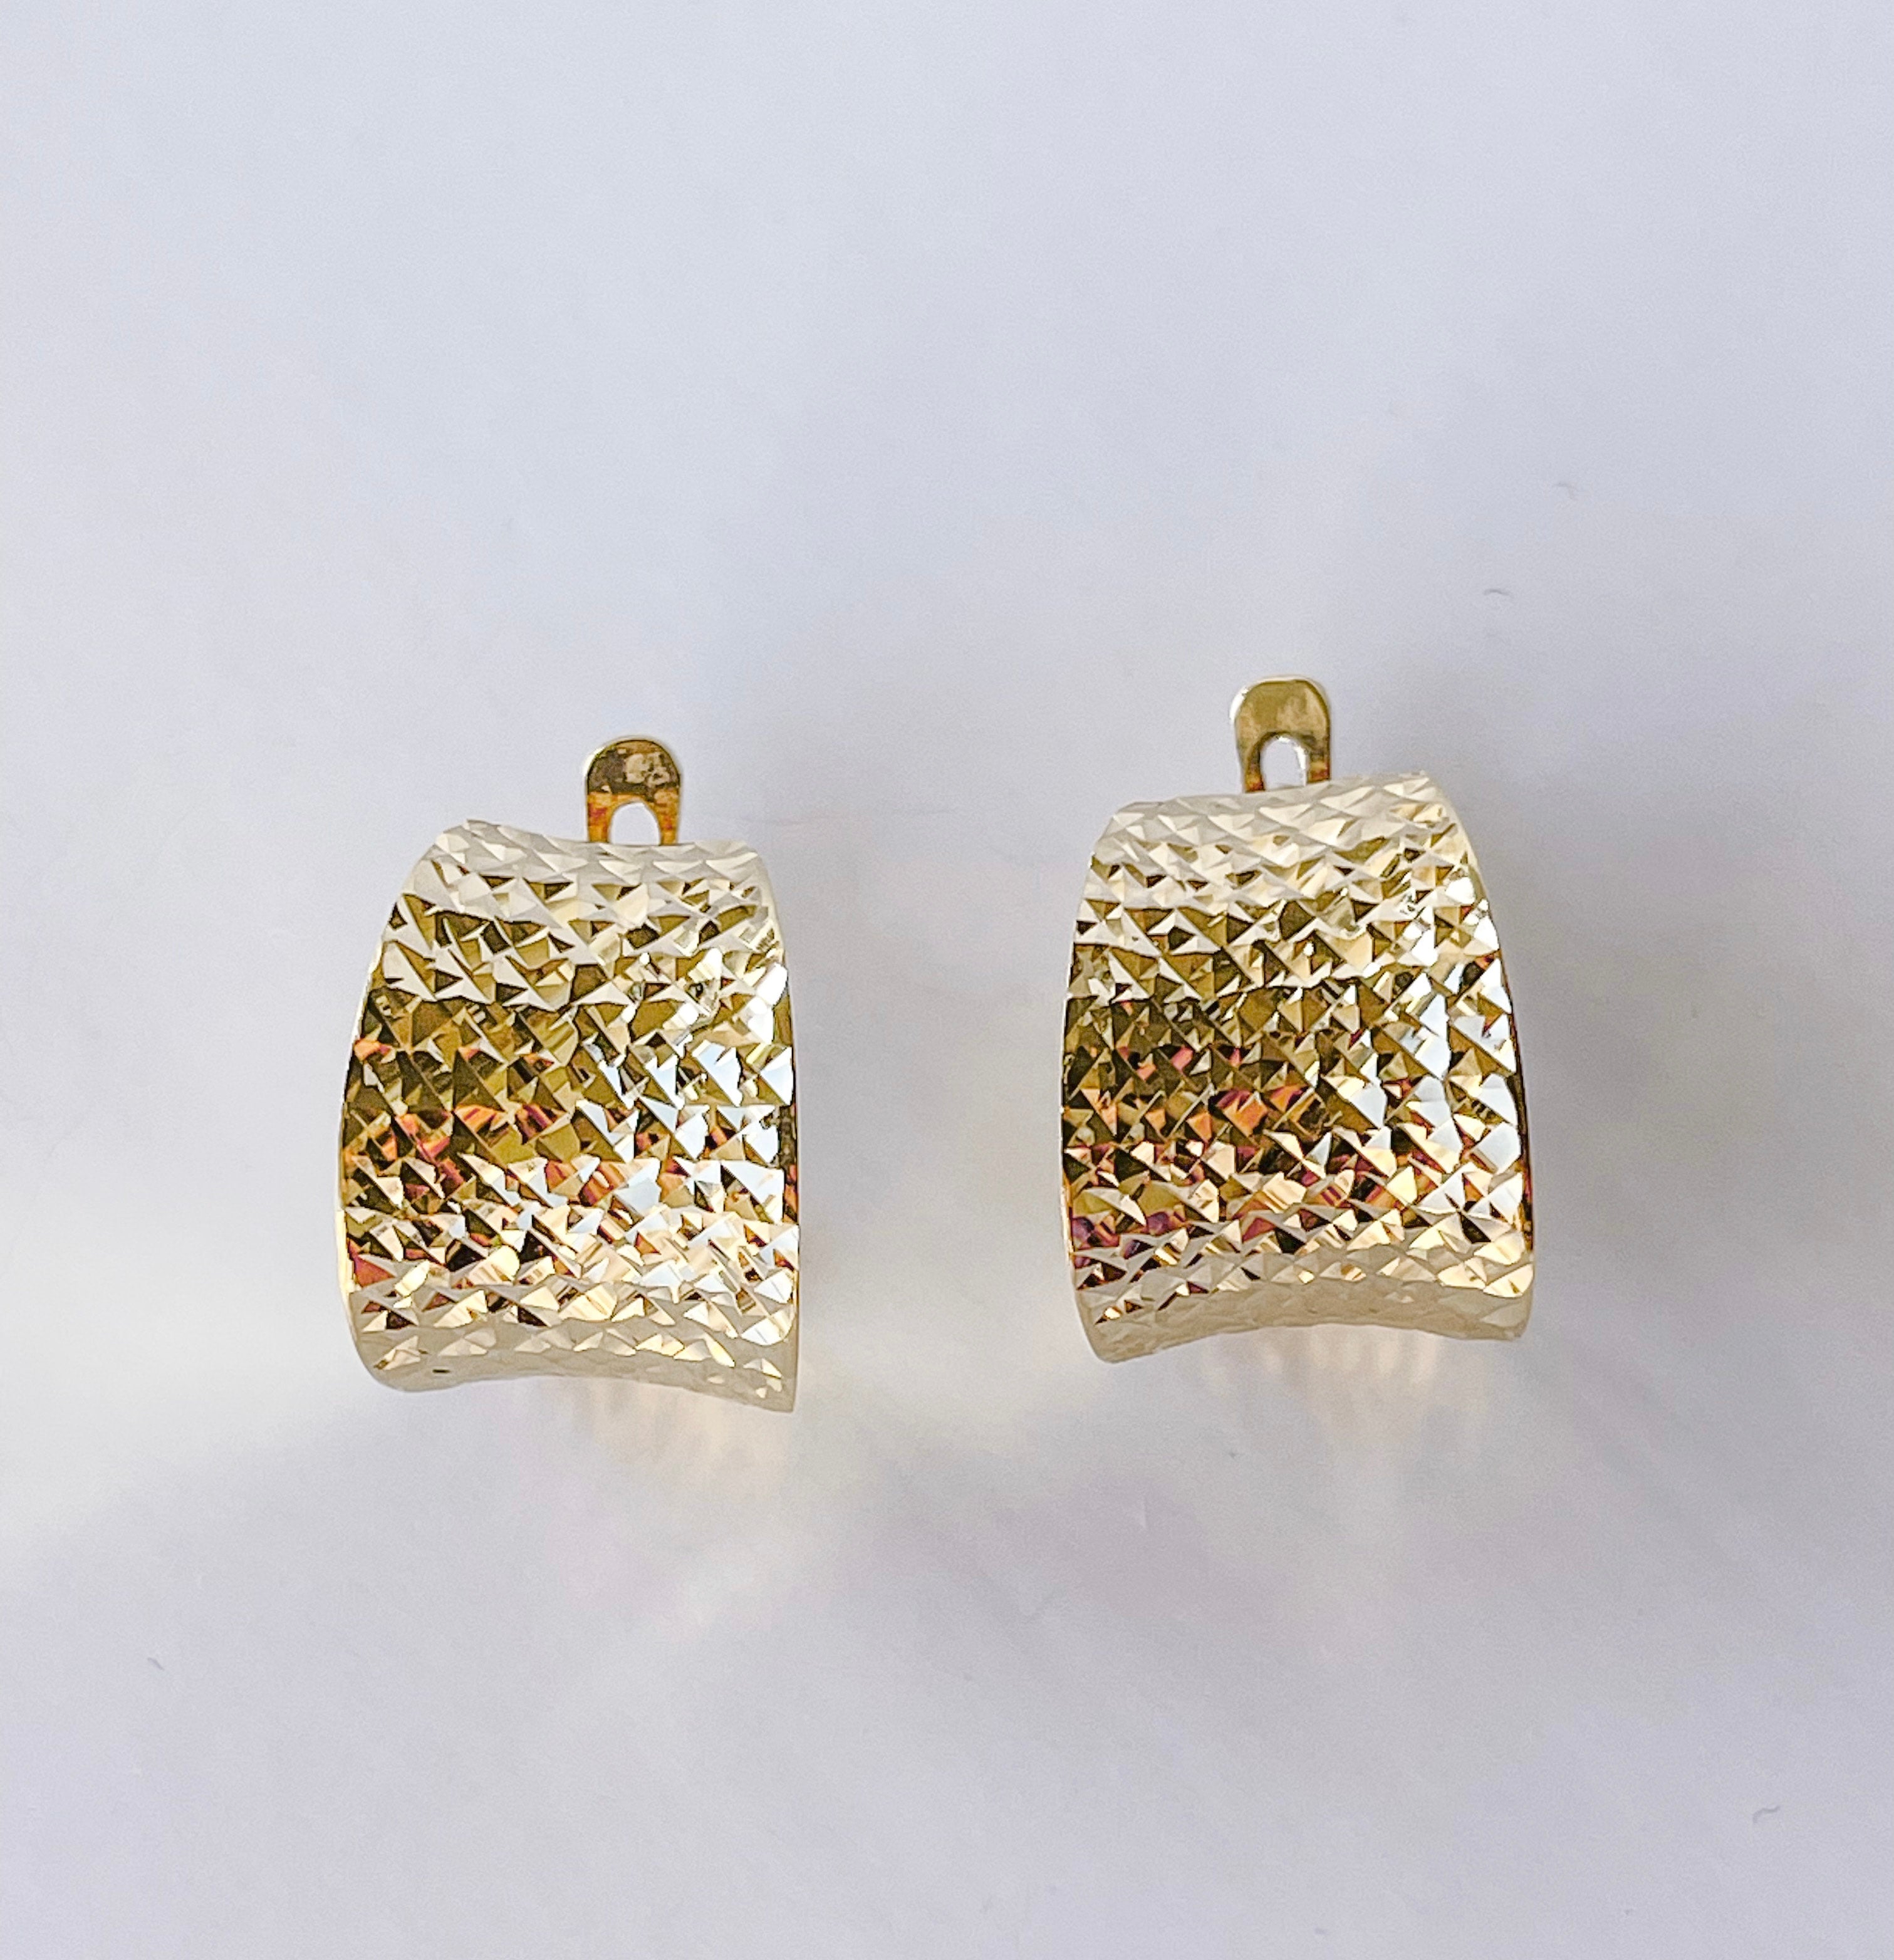 Lever back earrings in 14K yellow gold.